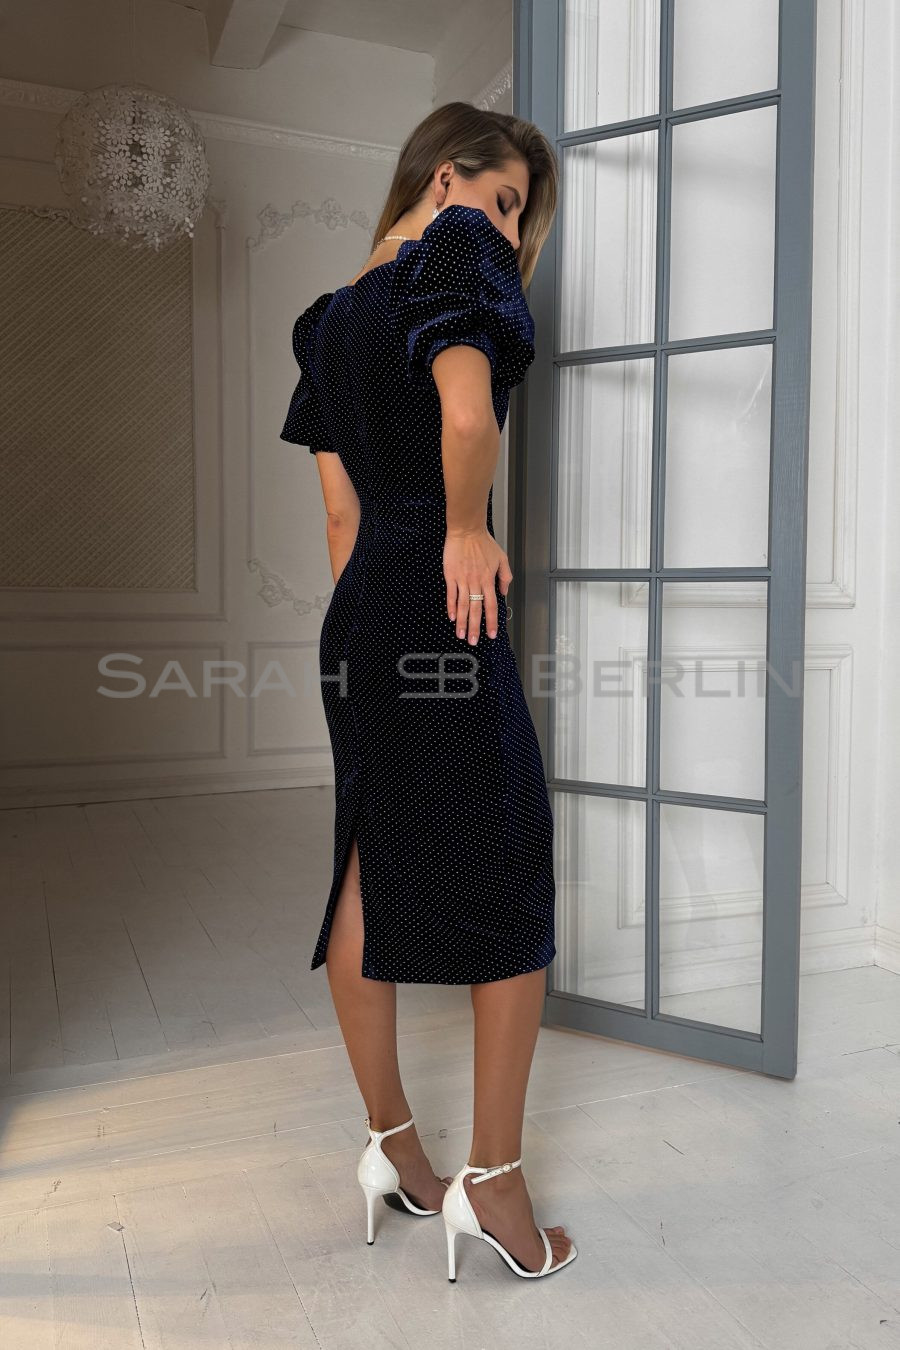 Платье в горошек с рукавами фонарик, из итальянского бархата на шелковой основе